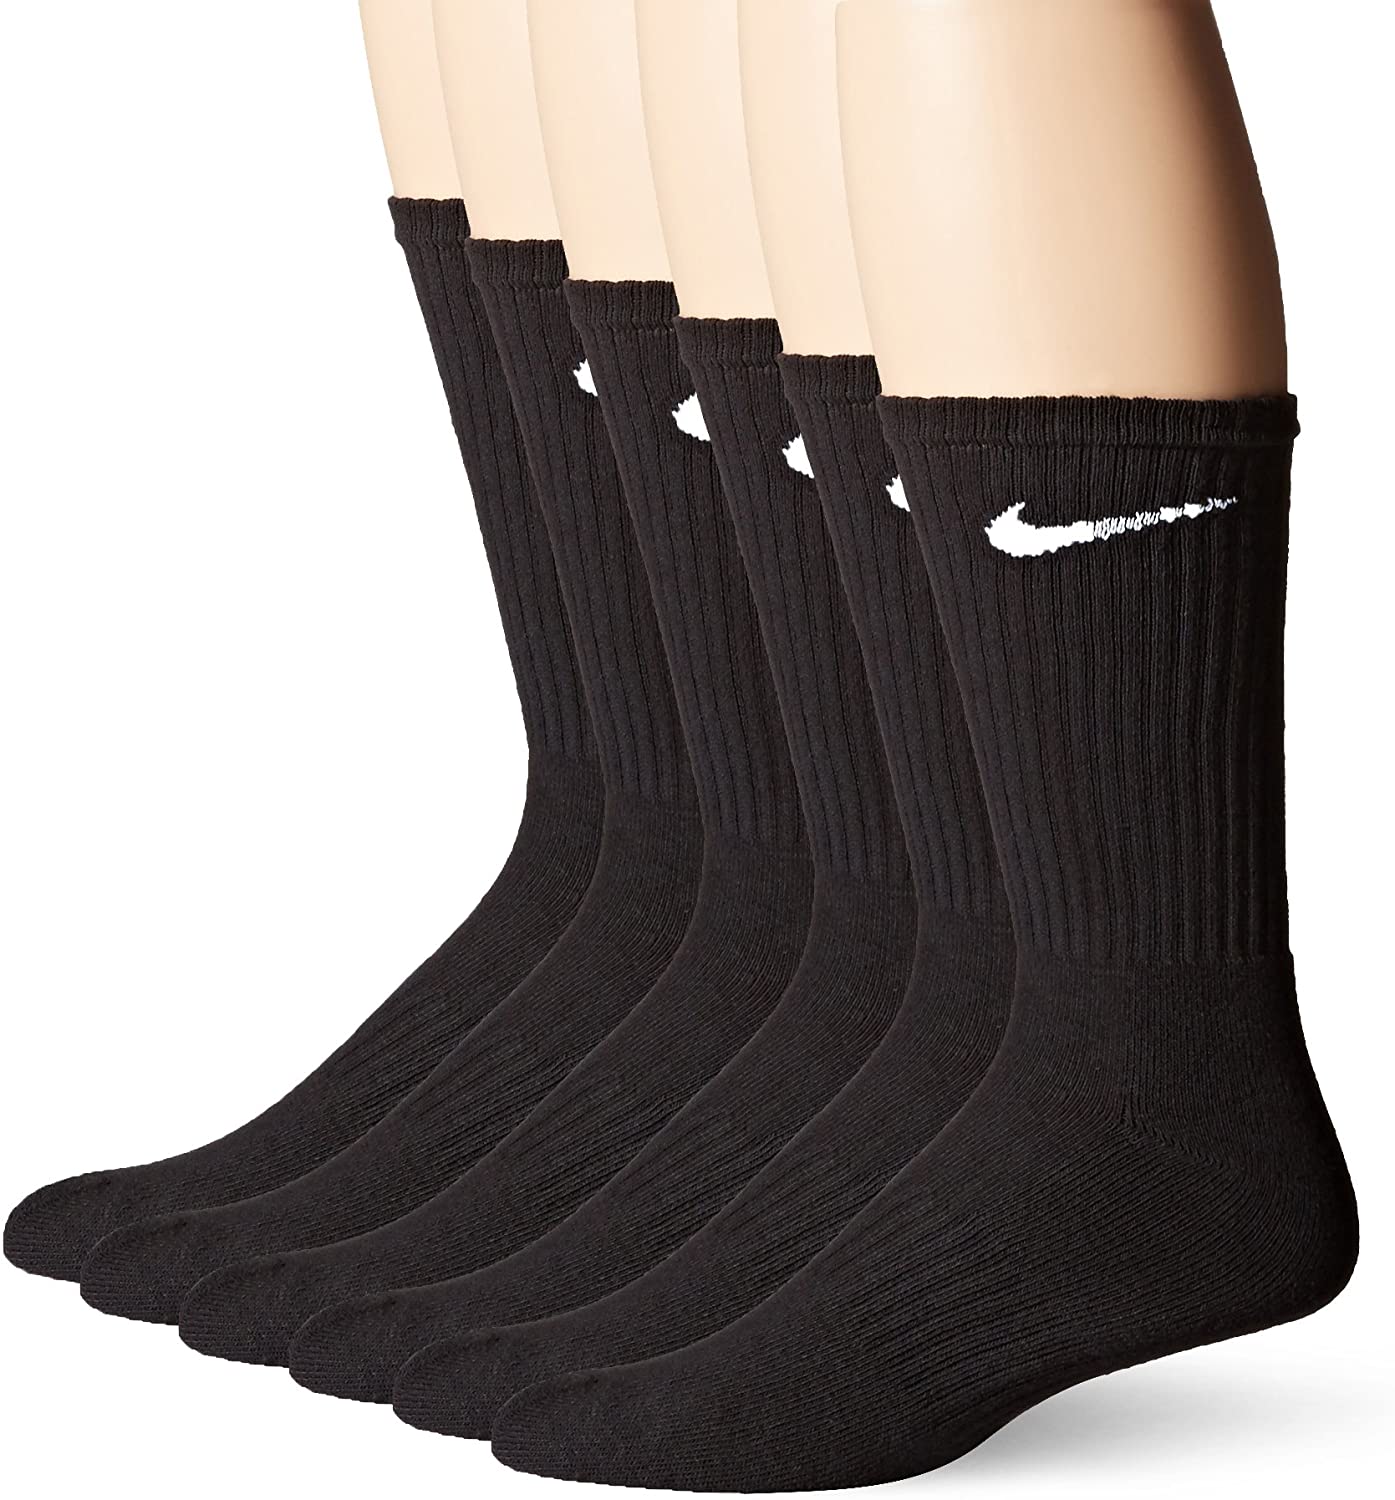 nike men's training socks